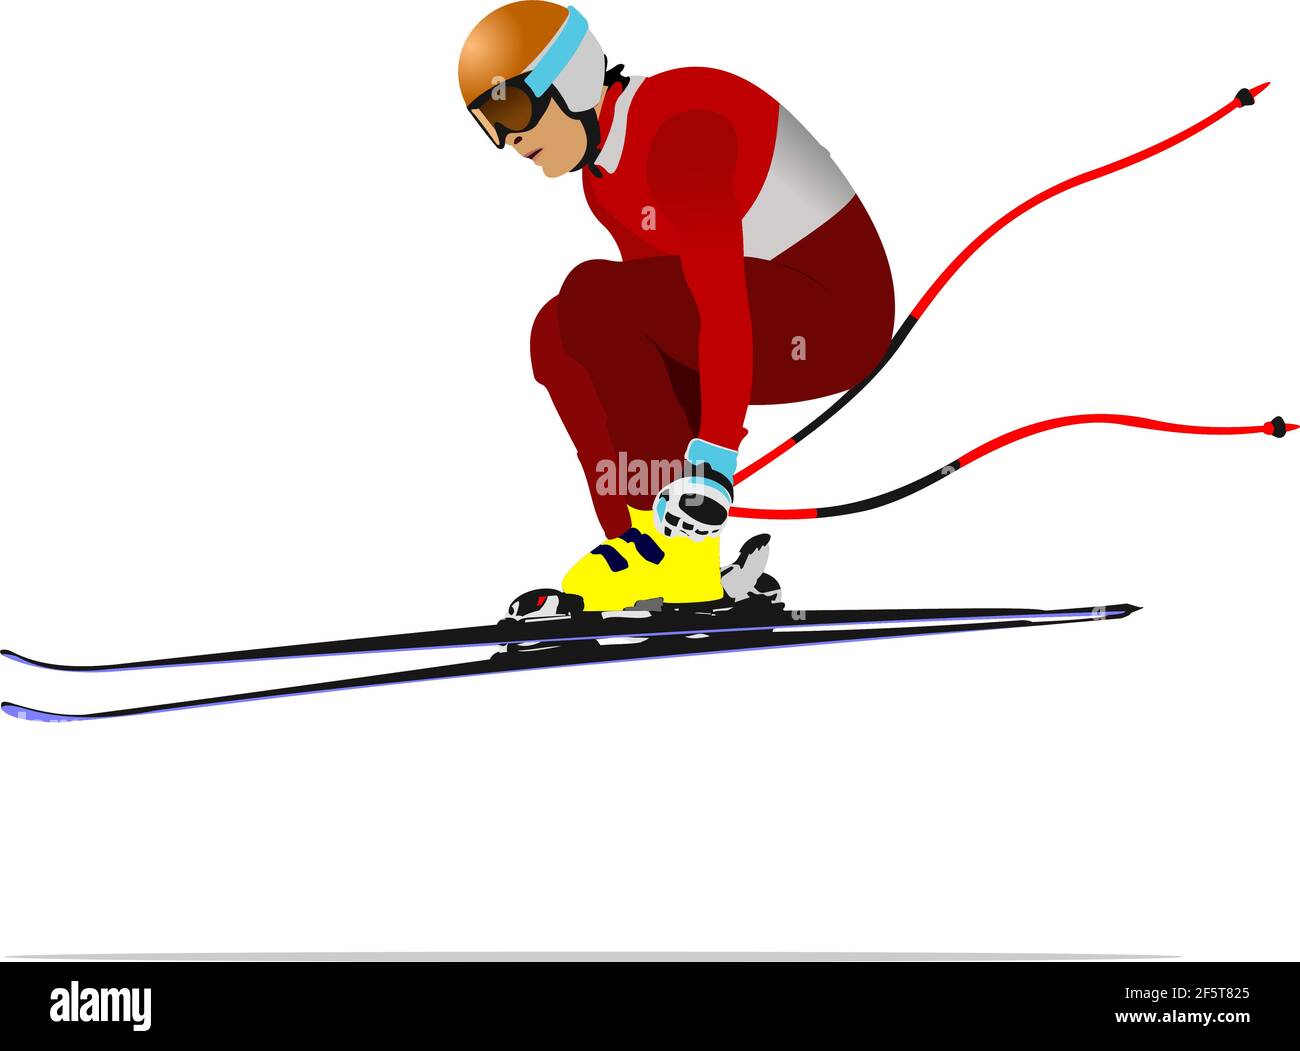 Ski alpin. illustration de couleurs vectorielles 3d Image Vectorielle Stock  - Alamy